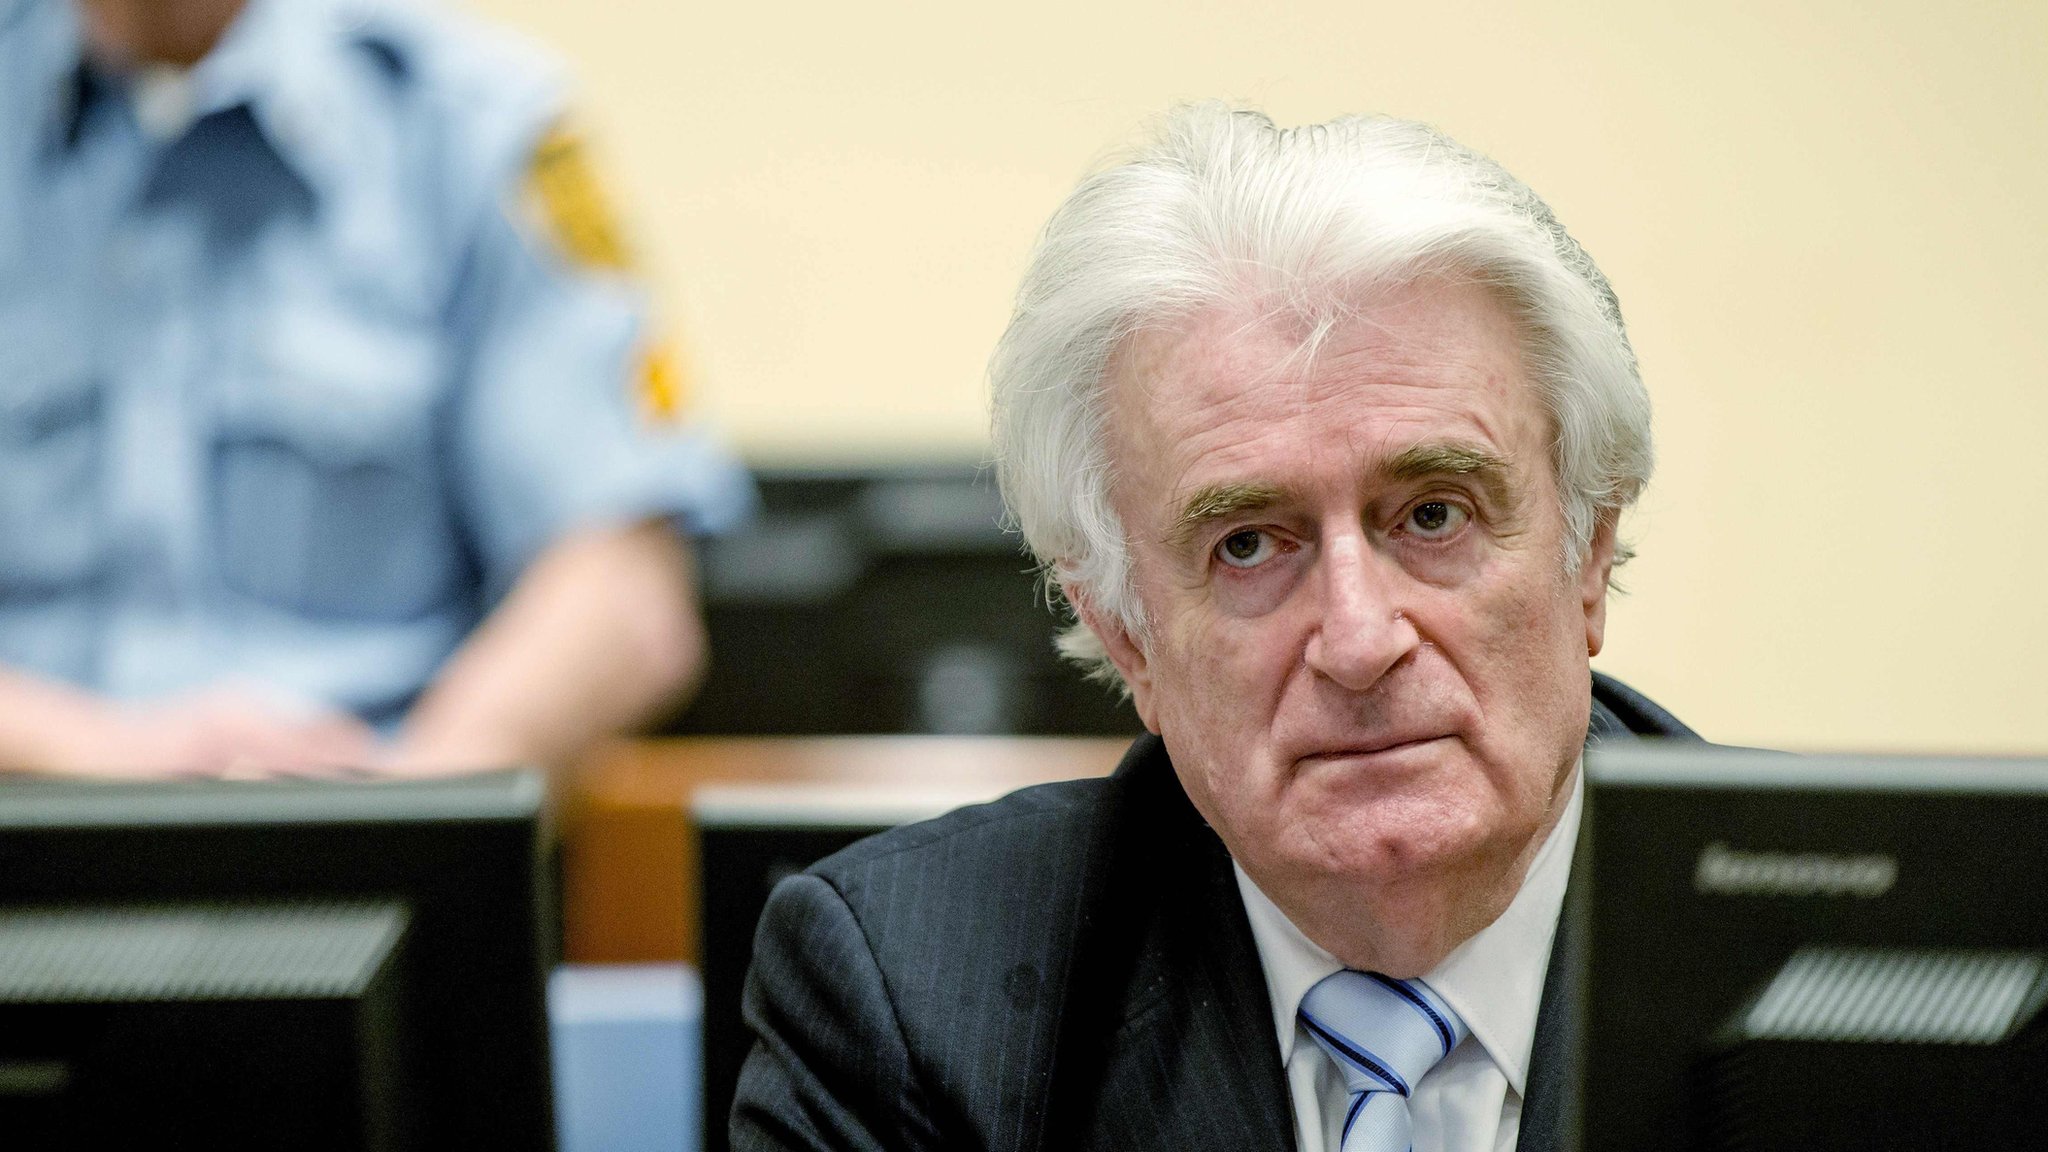 ボスニア虐殺でカラジッチ被告に禁錮40年判決 - BBCニュース